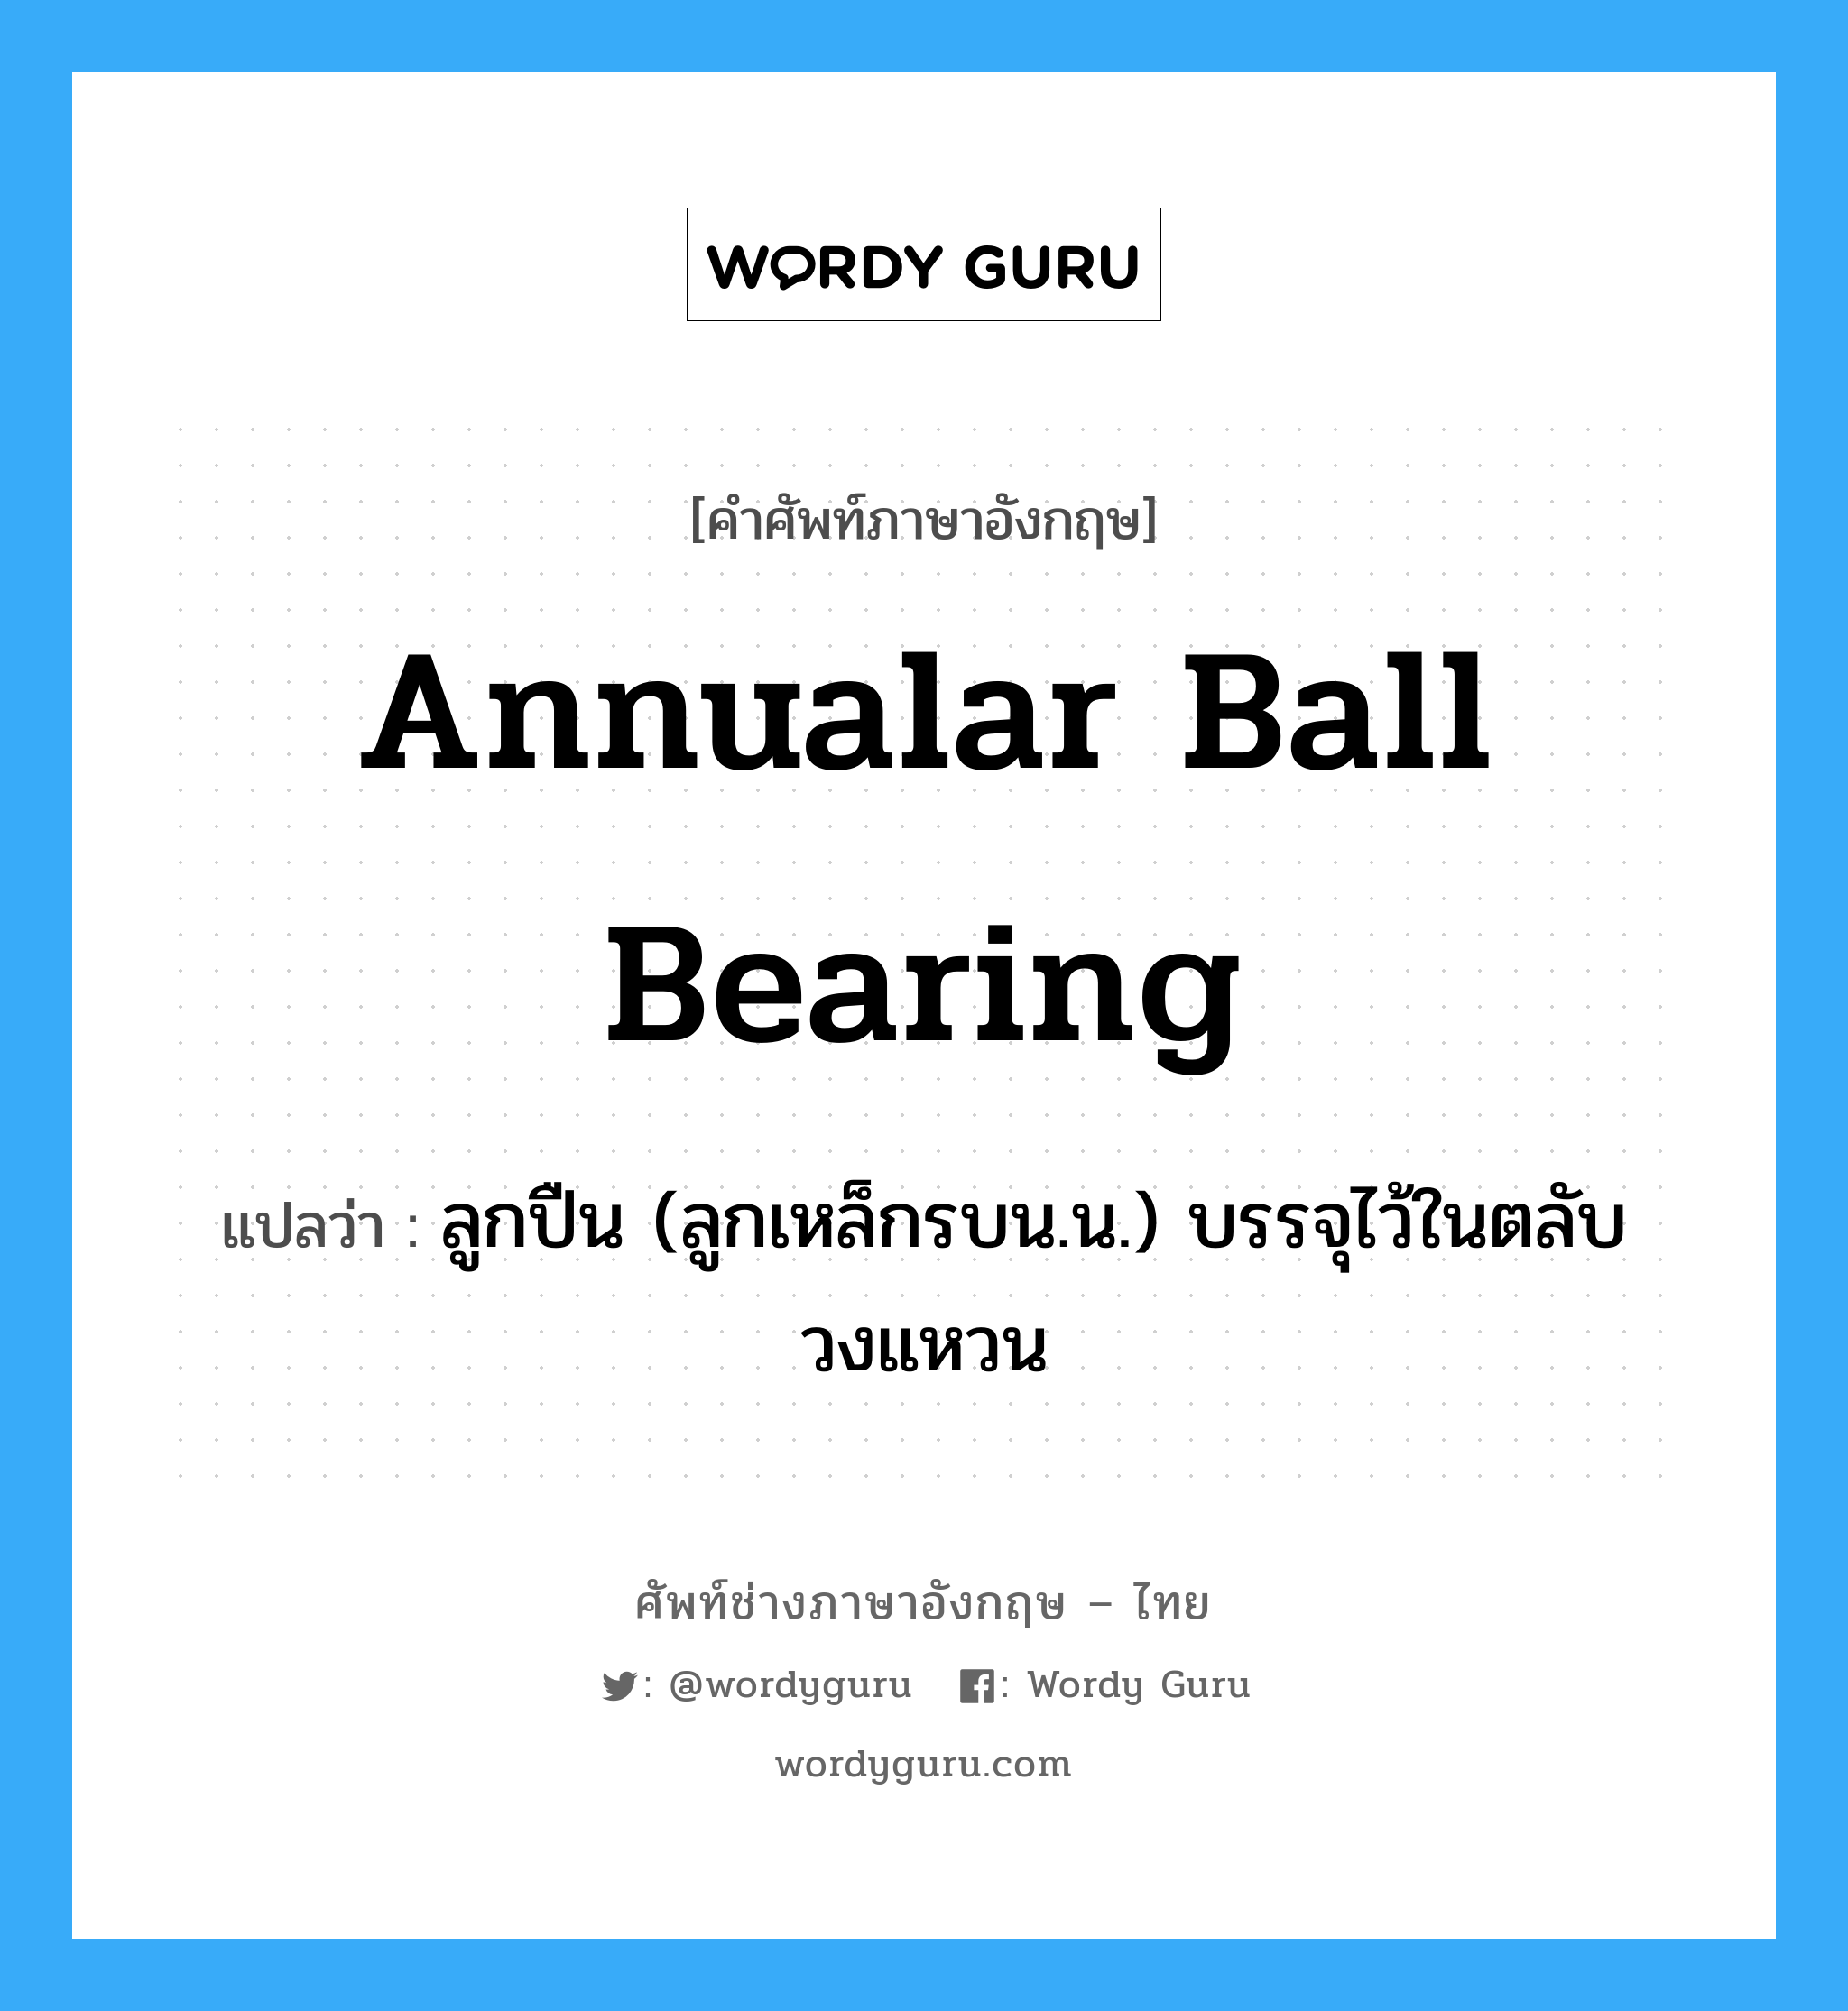 annualar ball bearing แปลว่า?, คำศัพท์ช่างภาษาอังกฤษ - ไทย annualar ball bearing คำศัพท์ภาษาอังกฤษ annualar ball bearing แปลว่า ลูกปืน (ลูกเหล็กรบน.น.) บรรจุไว้ในตลับวงแหวน